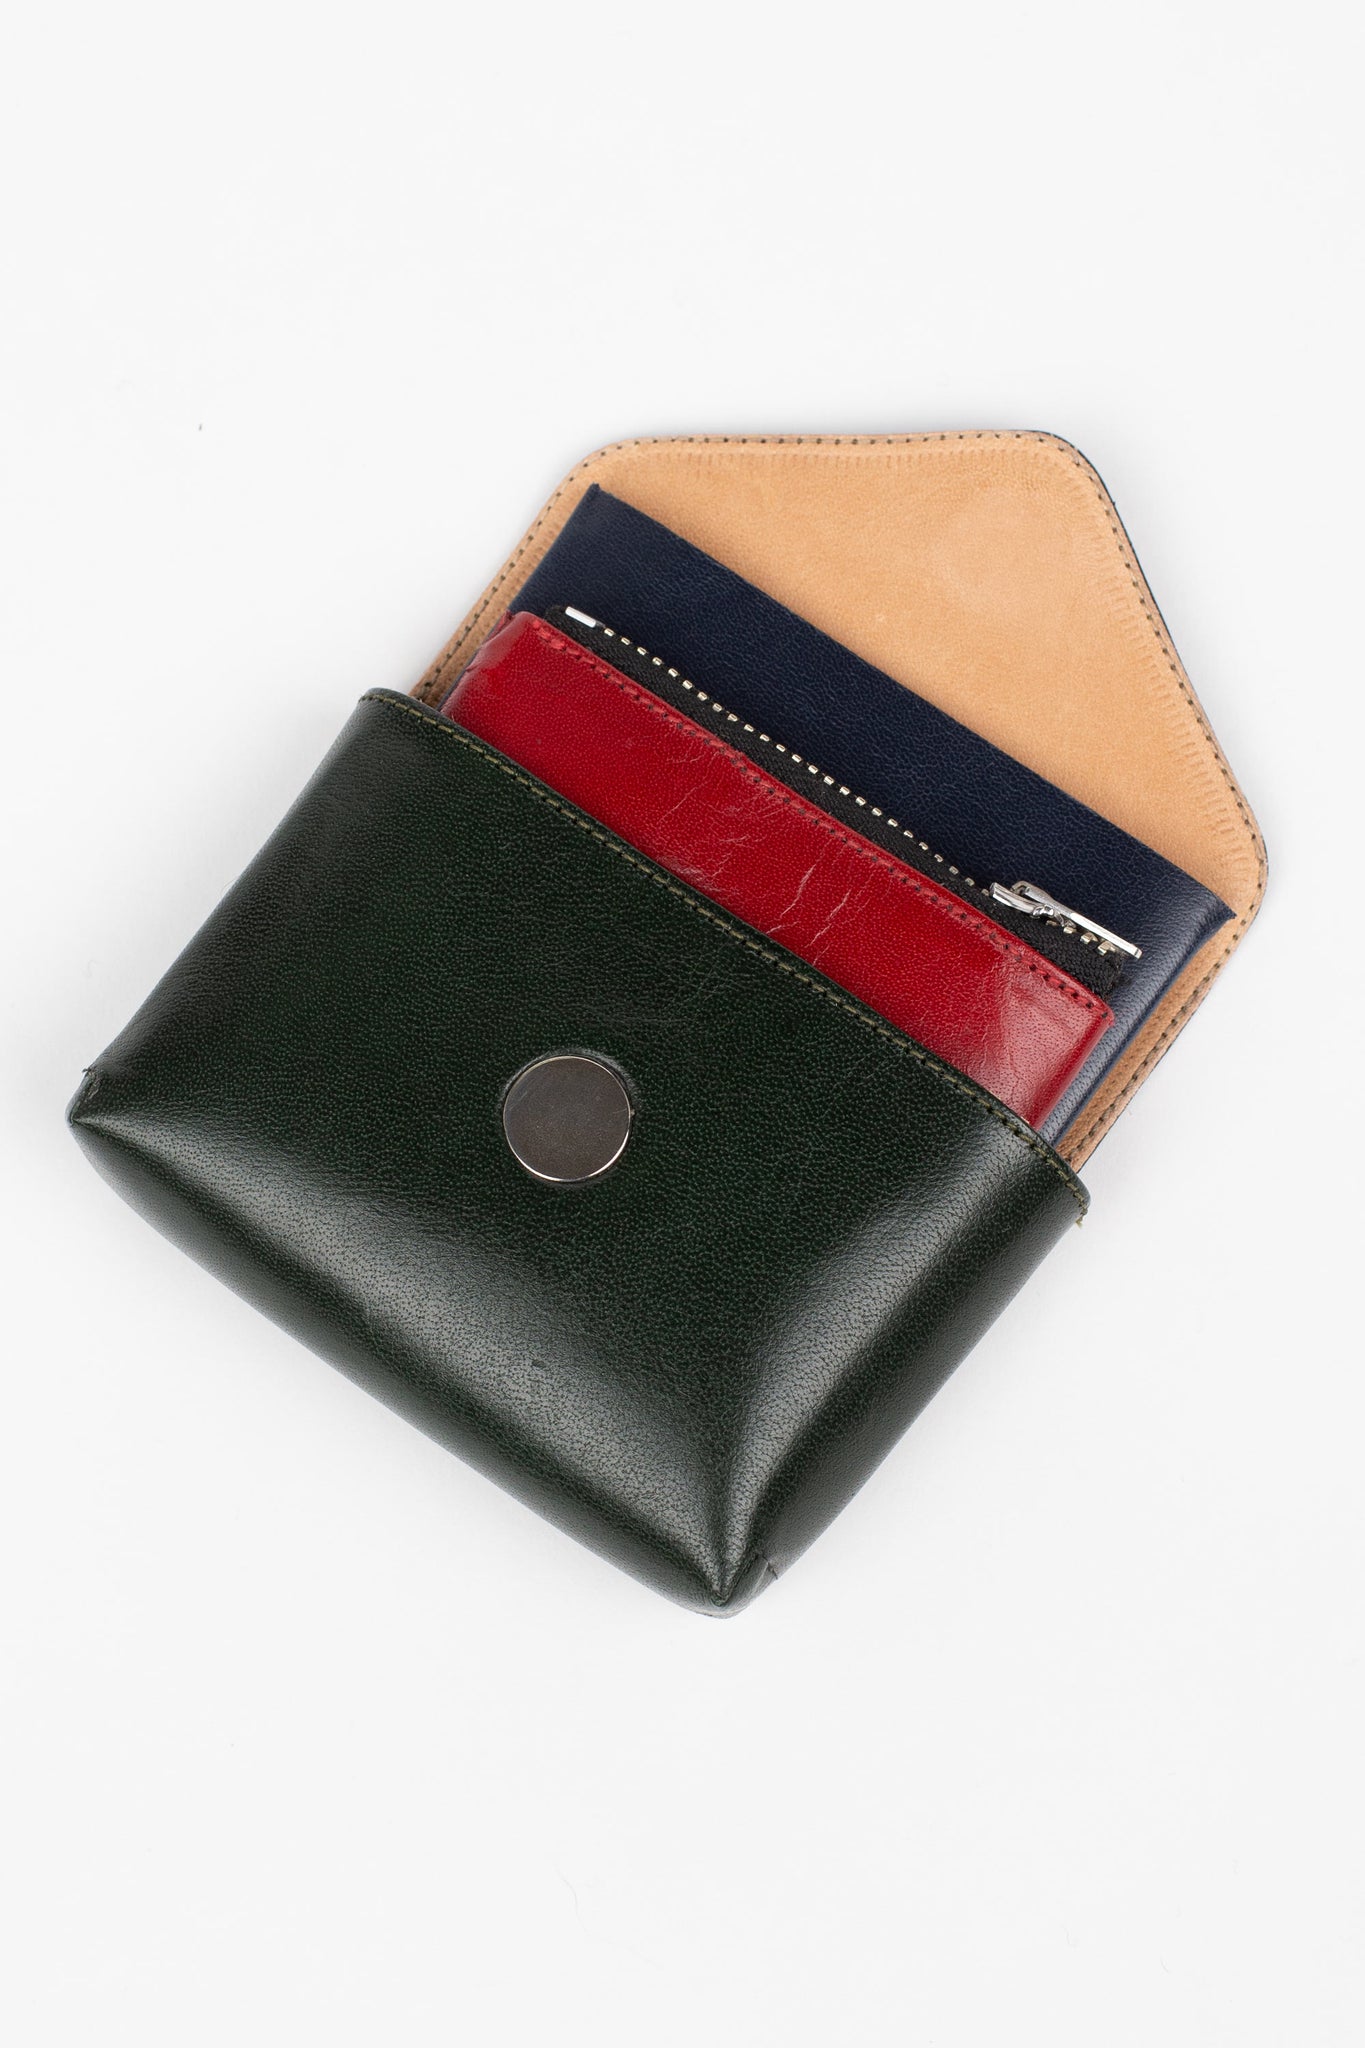 The Tuk Wallet, Medium, Red